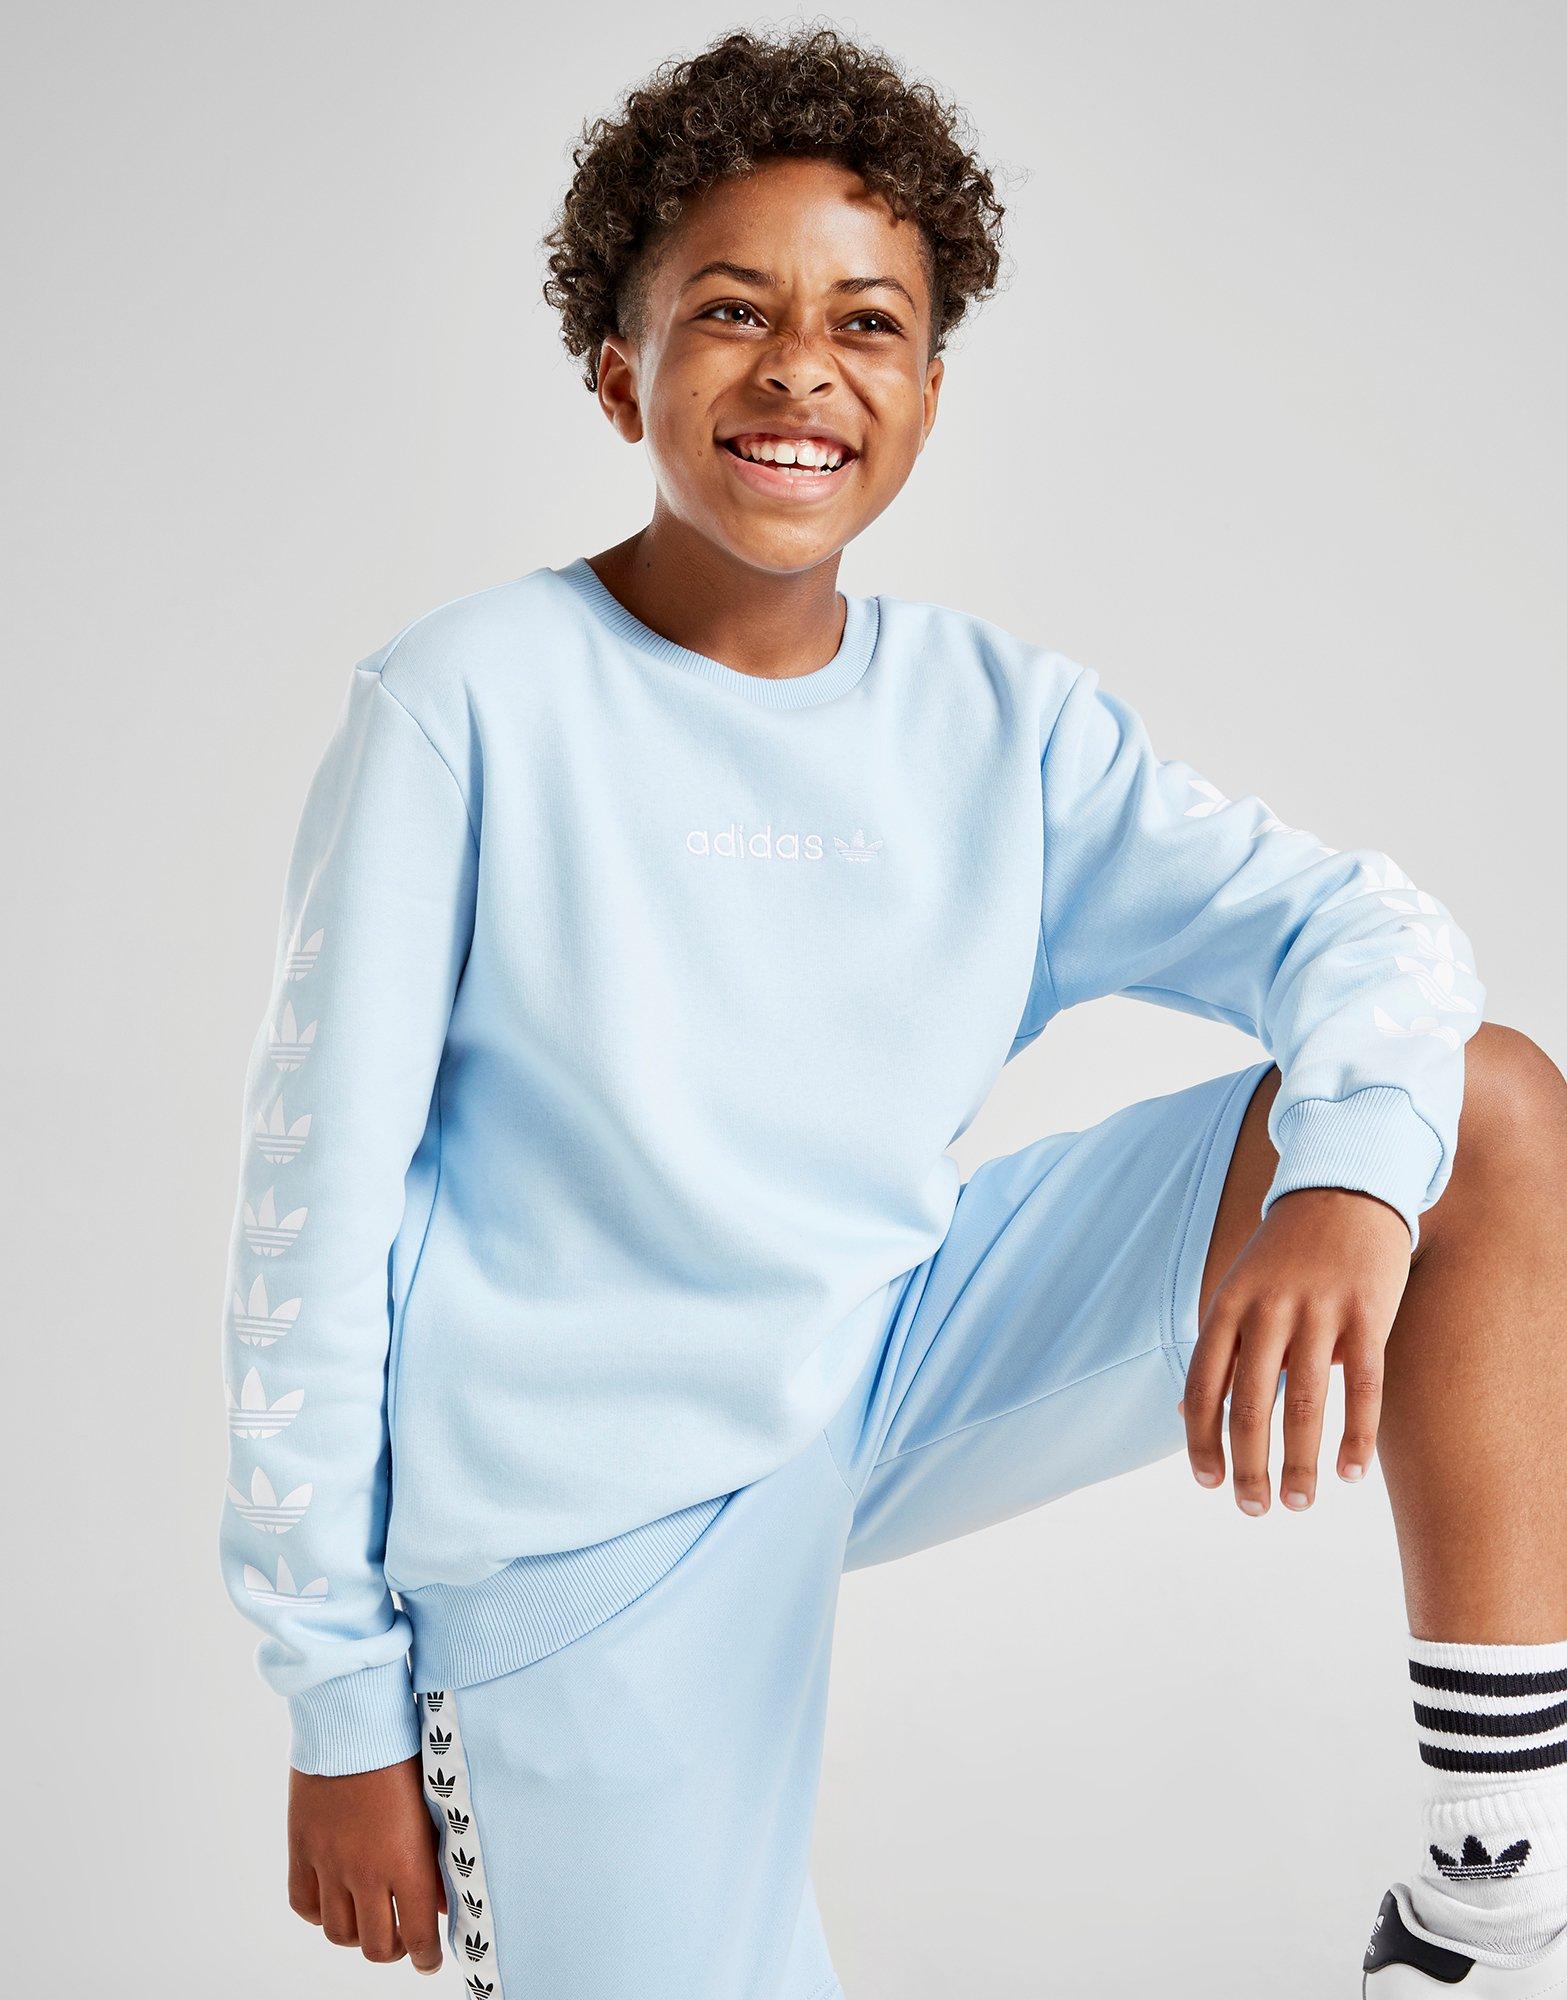 adidas originals trefoil repeat crew sweatshirt junior